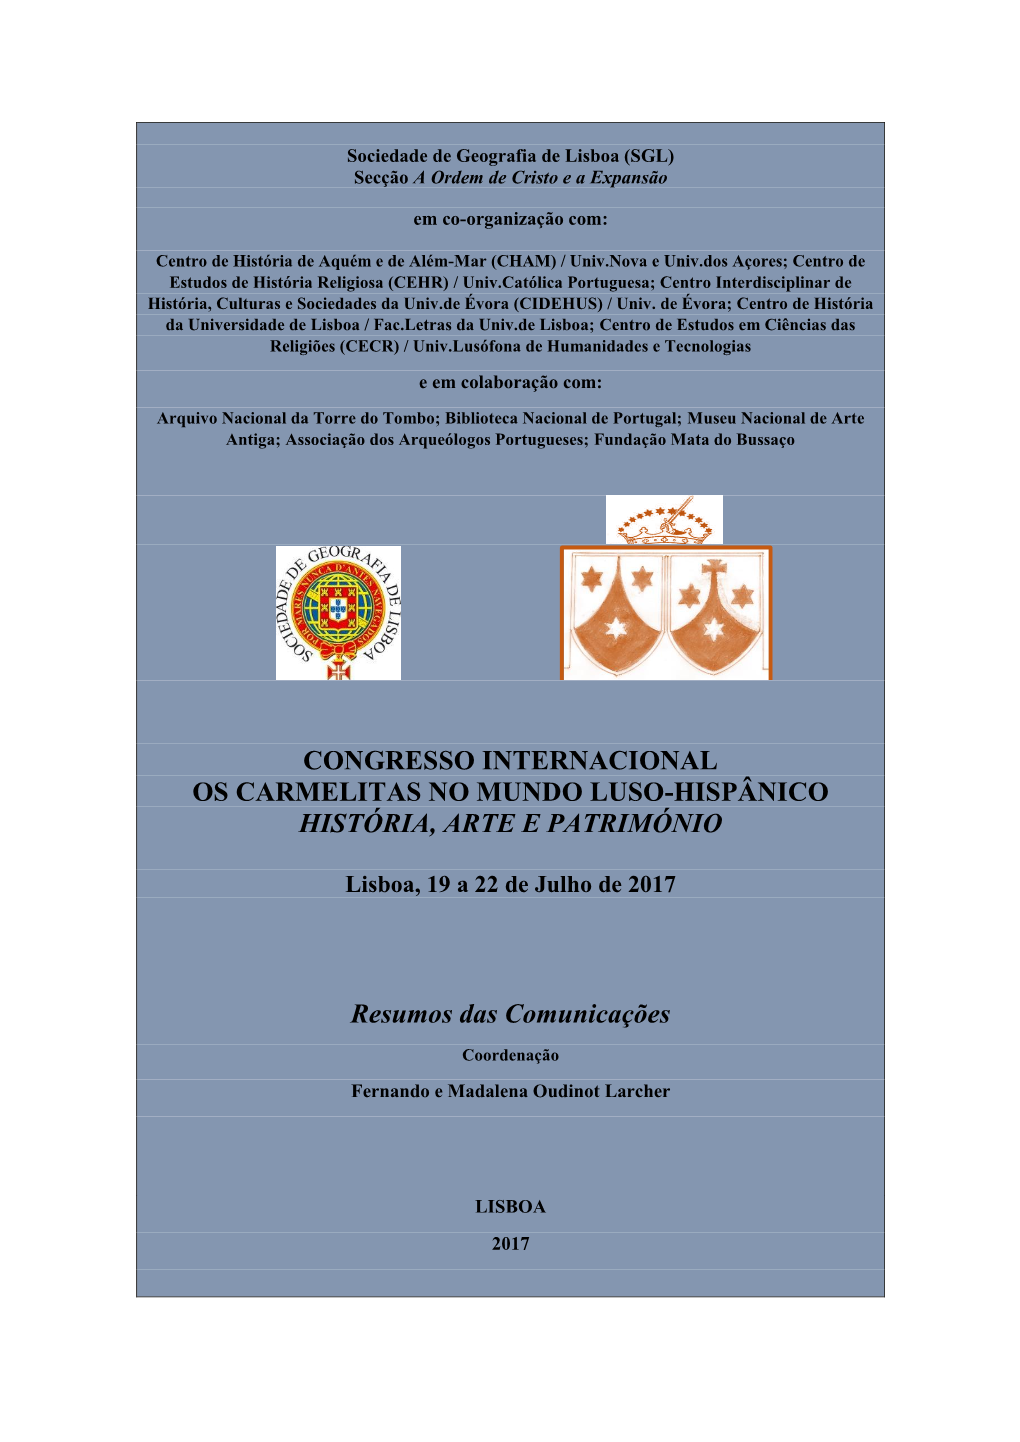 Congresso Internacional Os Carmelitas No Mundo Luso-Hispânico História, Arte E Património